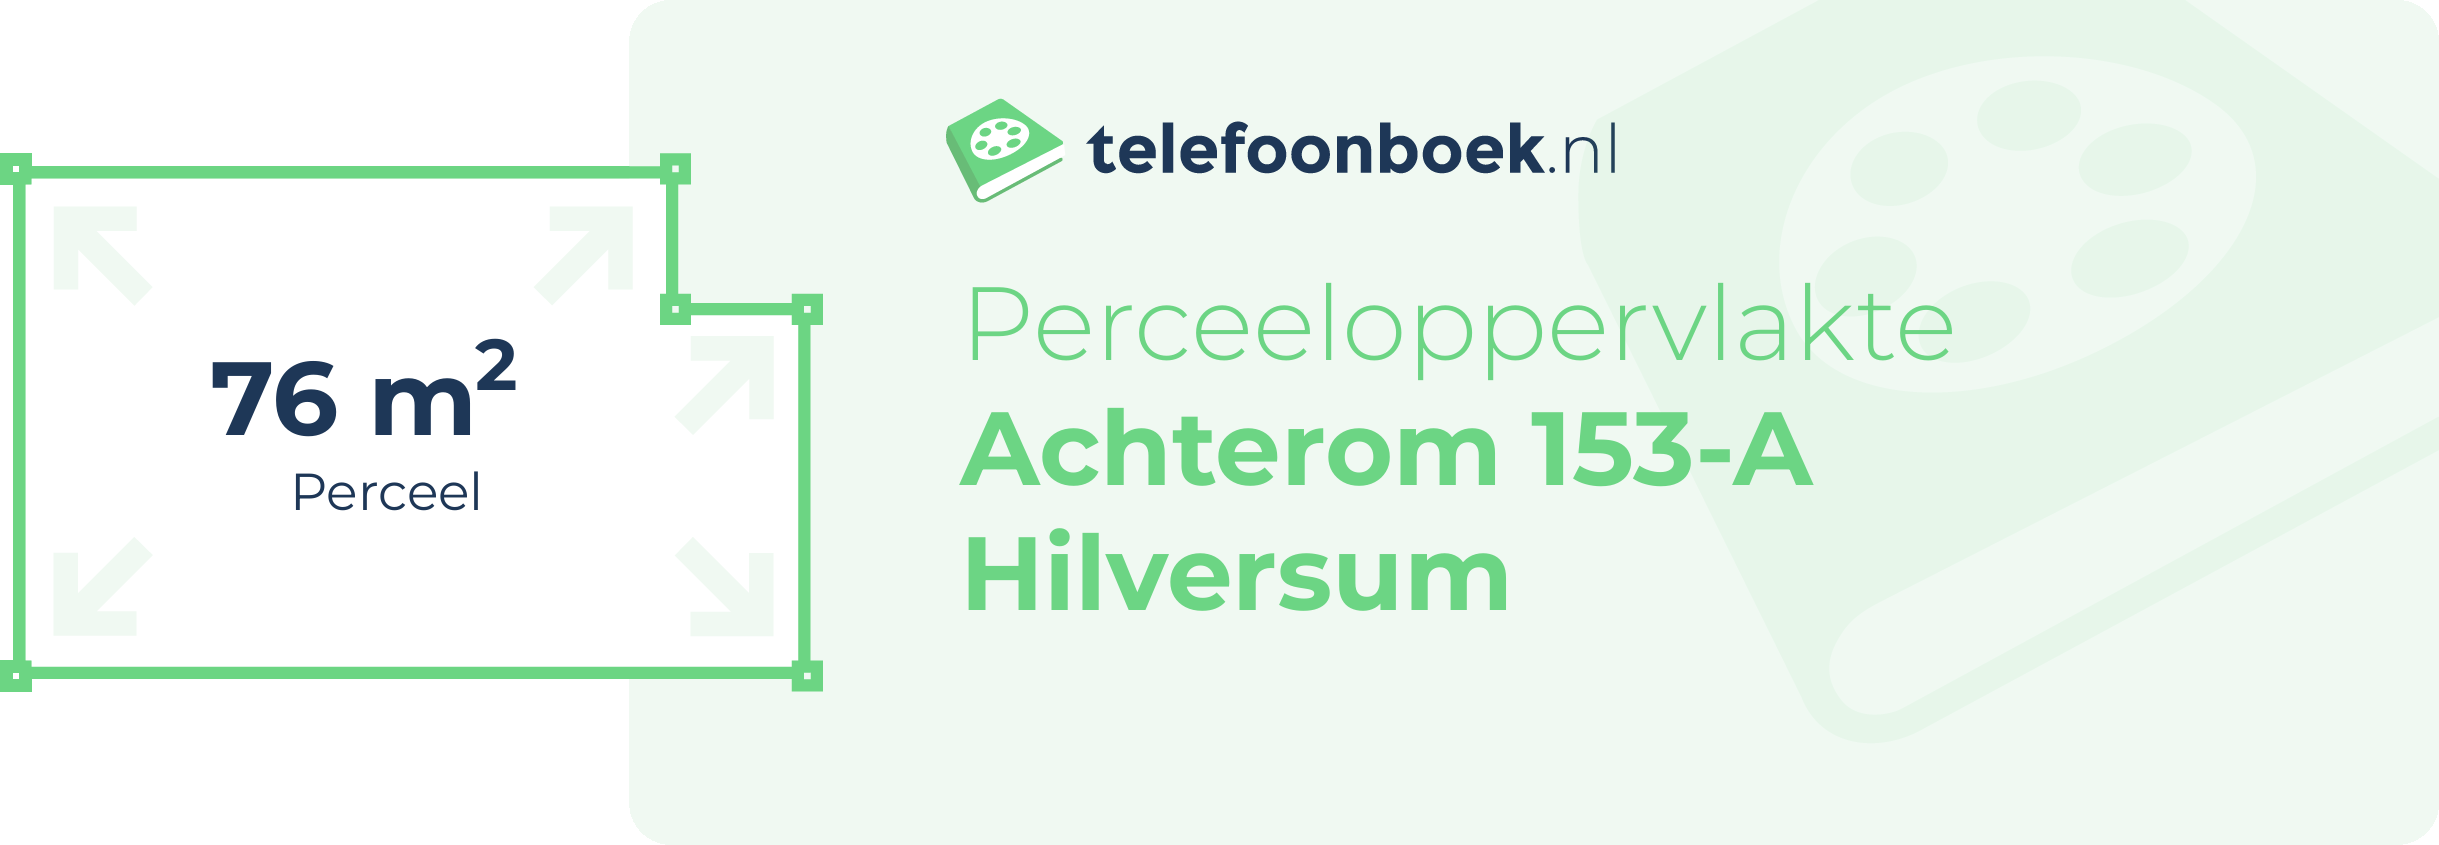 Perceeloppervlakte Achterom 153-A Hilversum